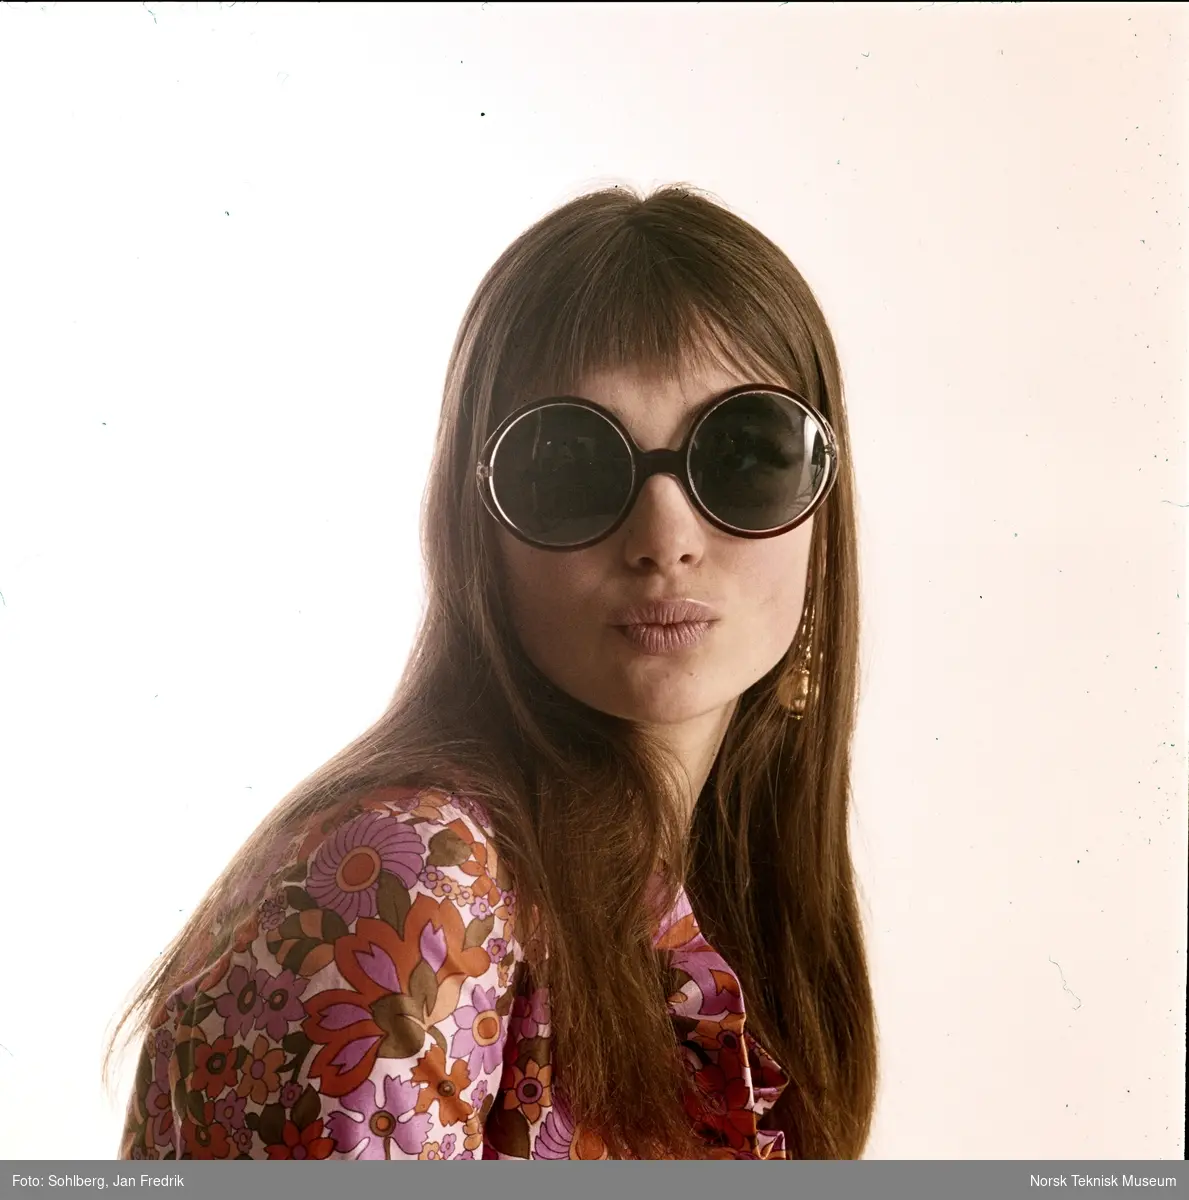 En kvinnelig modell viser fram tidens solbrillemote. Hun har langt hår hengende løst. Hun har store, runde solbriller og bluse med mye mønster med rosa og oransje blomster. Hippie-stil.